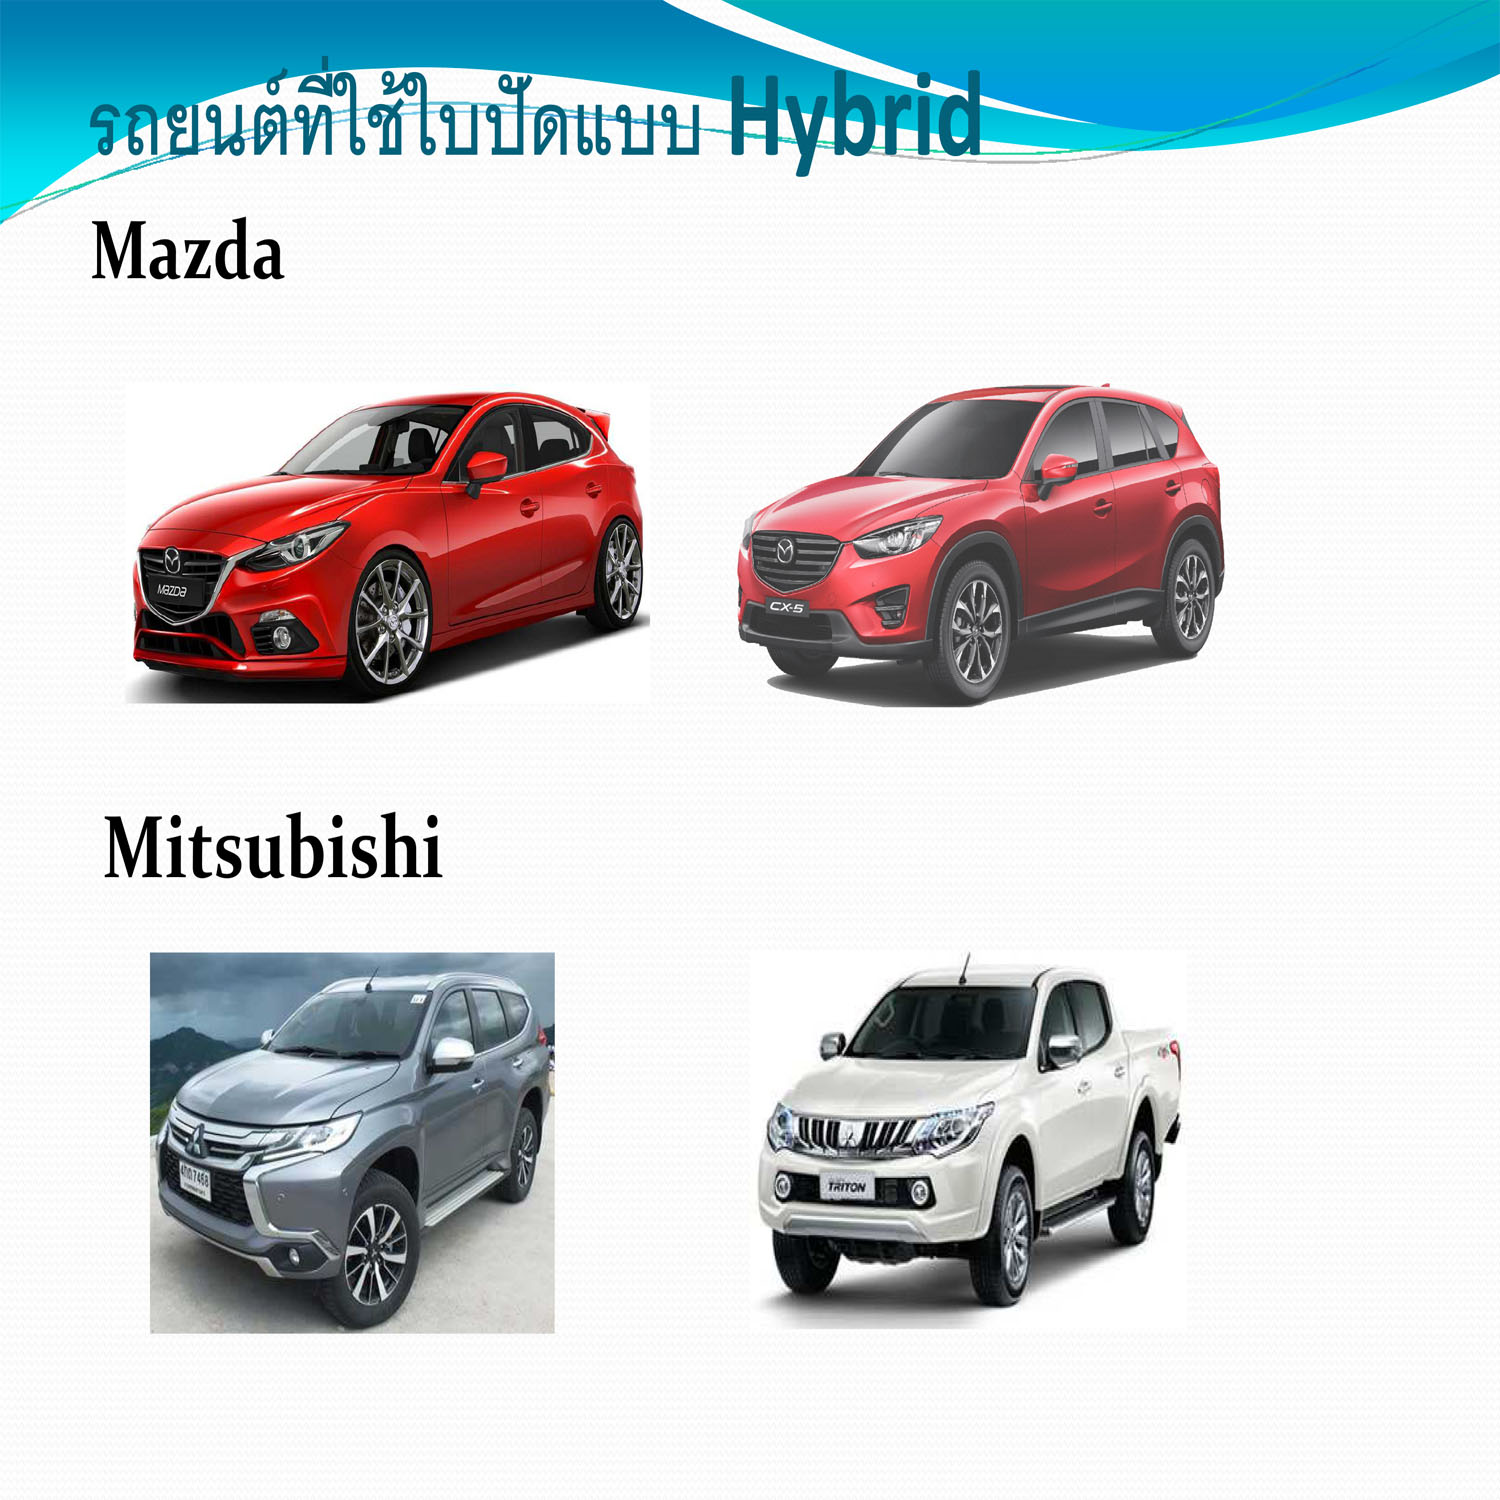 ใบปัดน้ำฝน ที่ใช้กับรถยนต์ mitsubishi pajero, triton, mazda3, mazda cx5